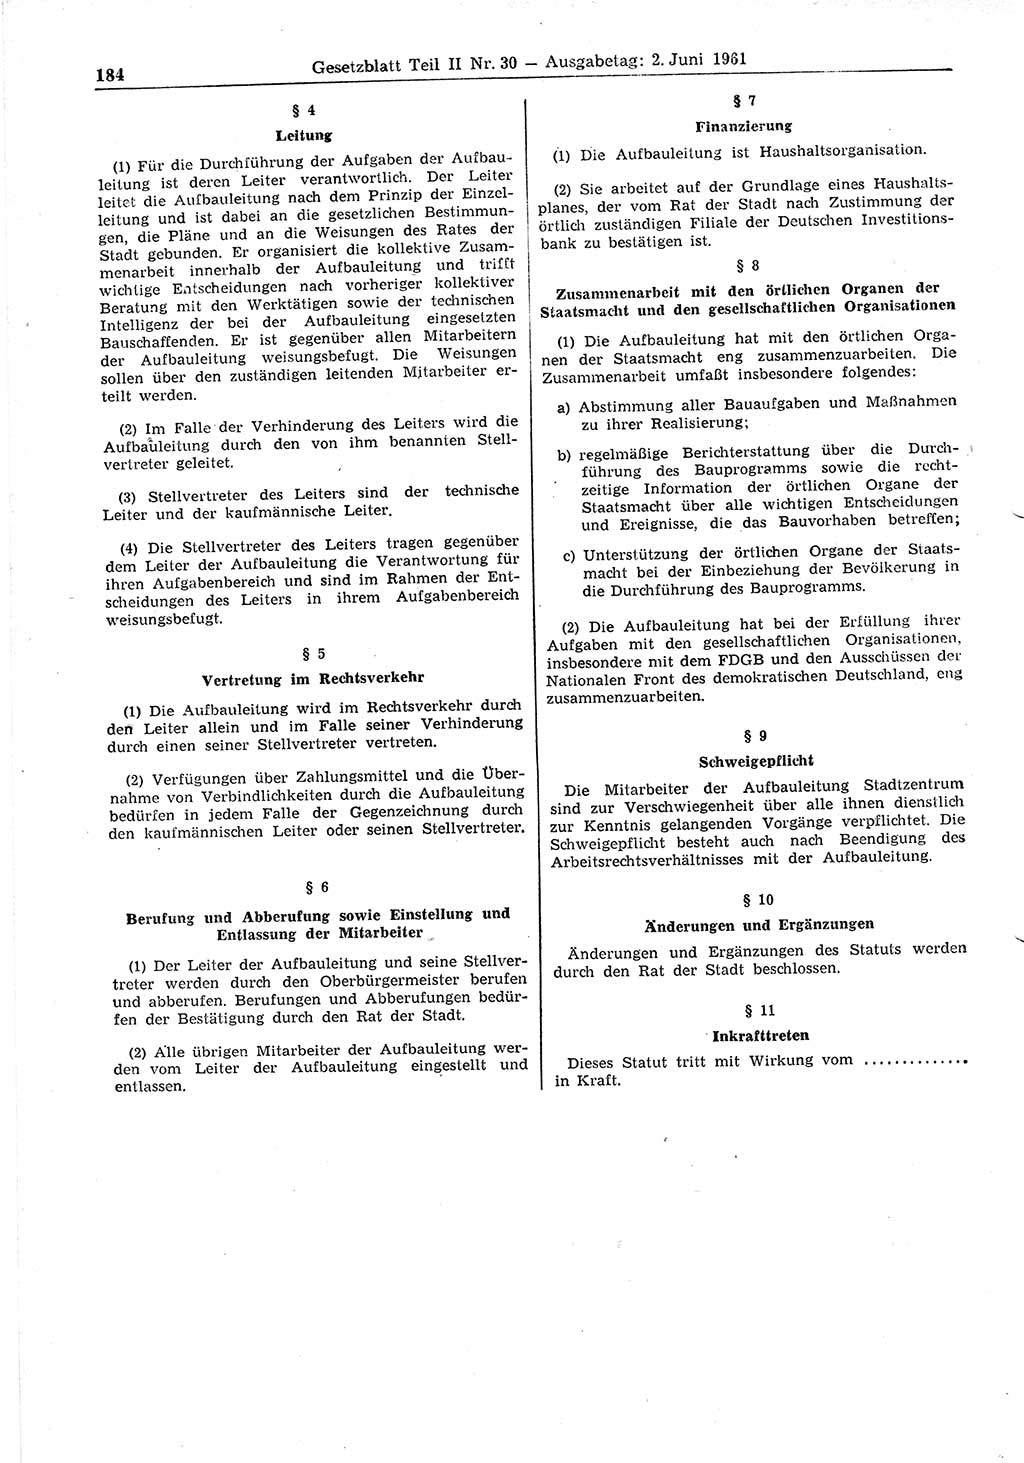 Gesetzblatt (GBl.) der Deutschen Demokratischen Republik (DDR) Teil ⅠⅠ 1961, Seite 184 (GBl. DDR ⅠⅠ 1961, S. 184)